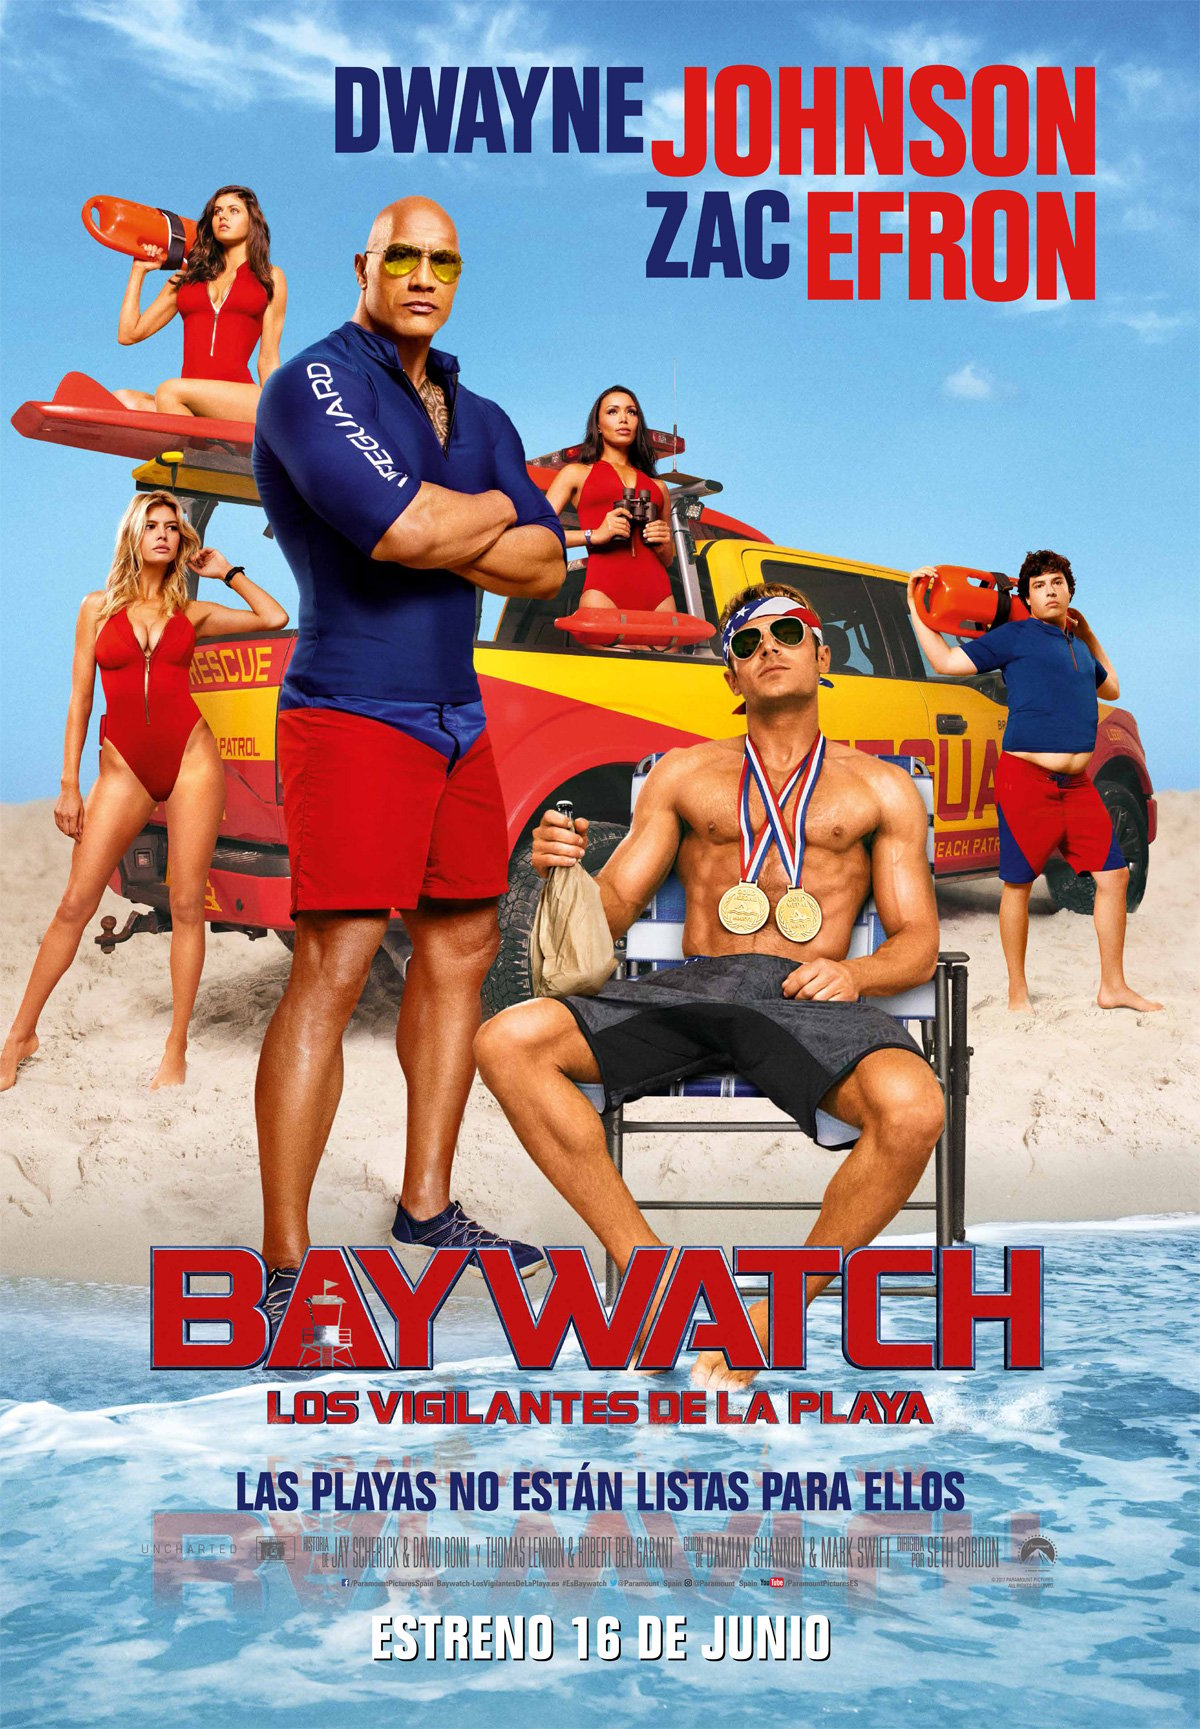 Baywatch: Los vigilantes de la playa - Película 2017 - SensaCine.com